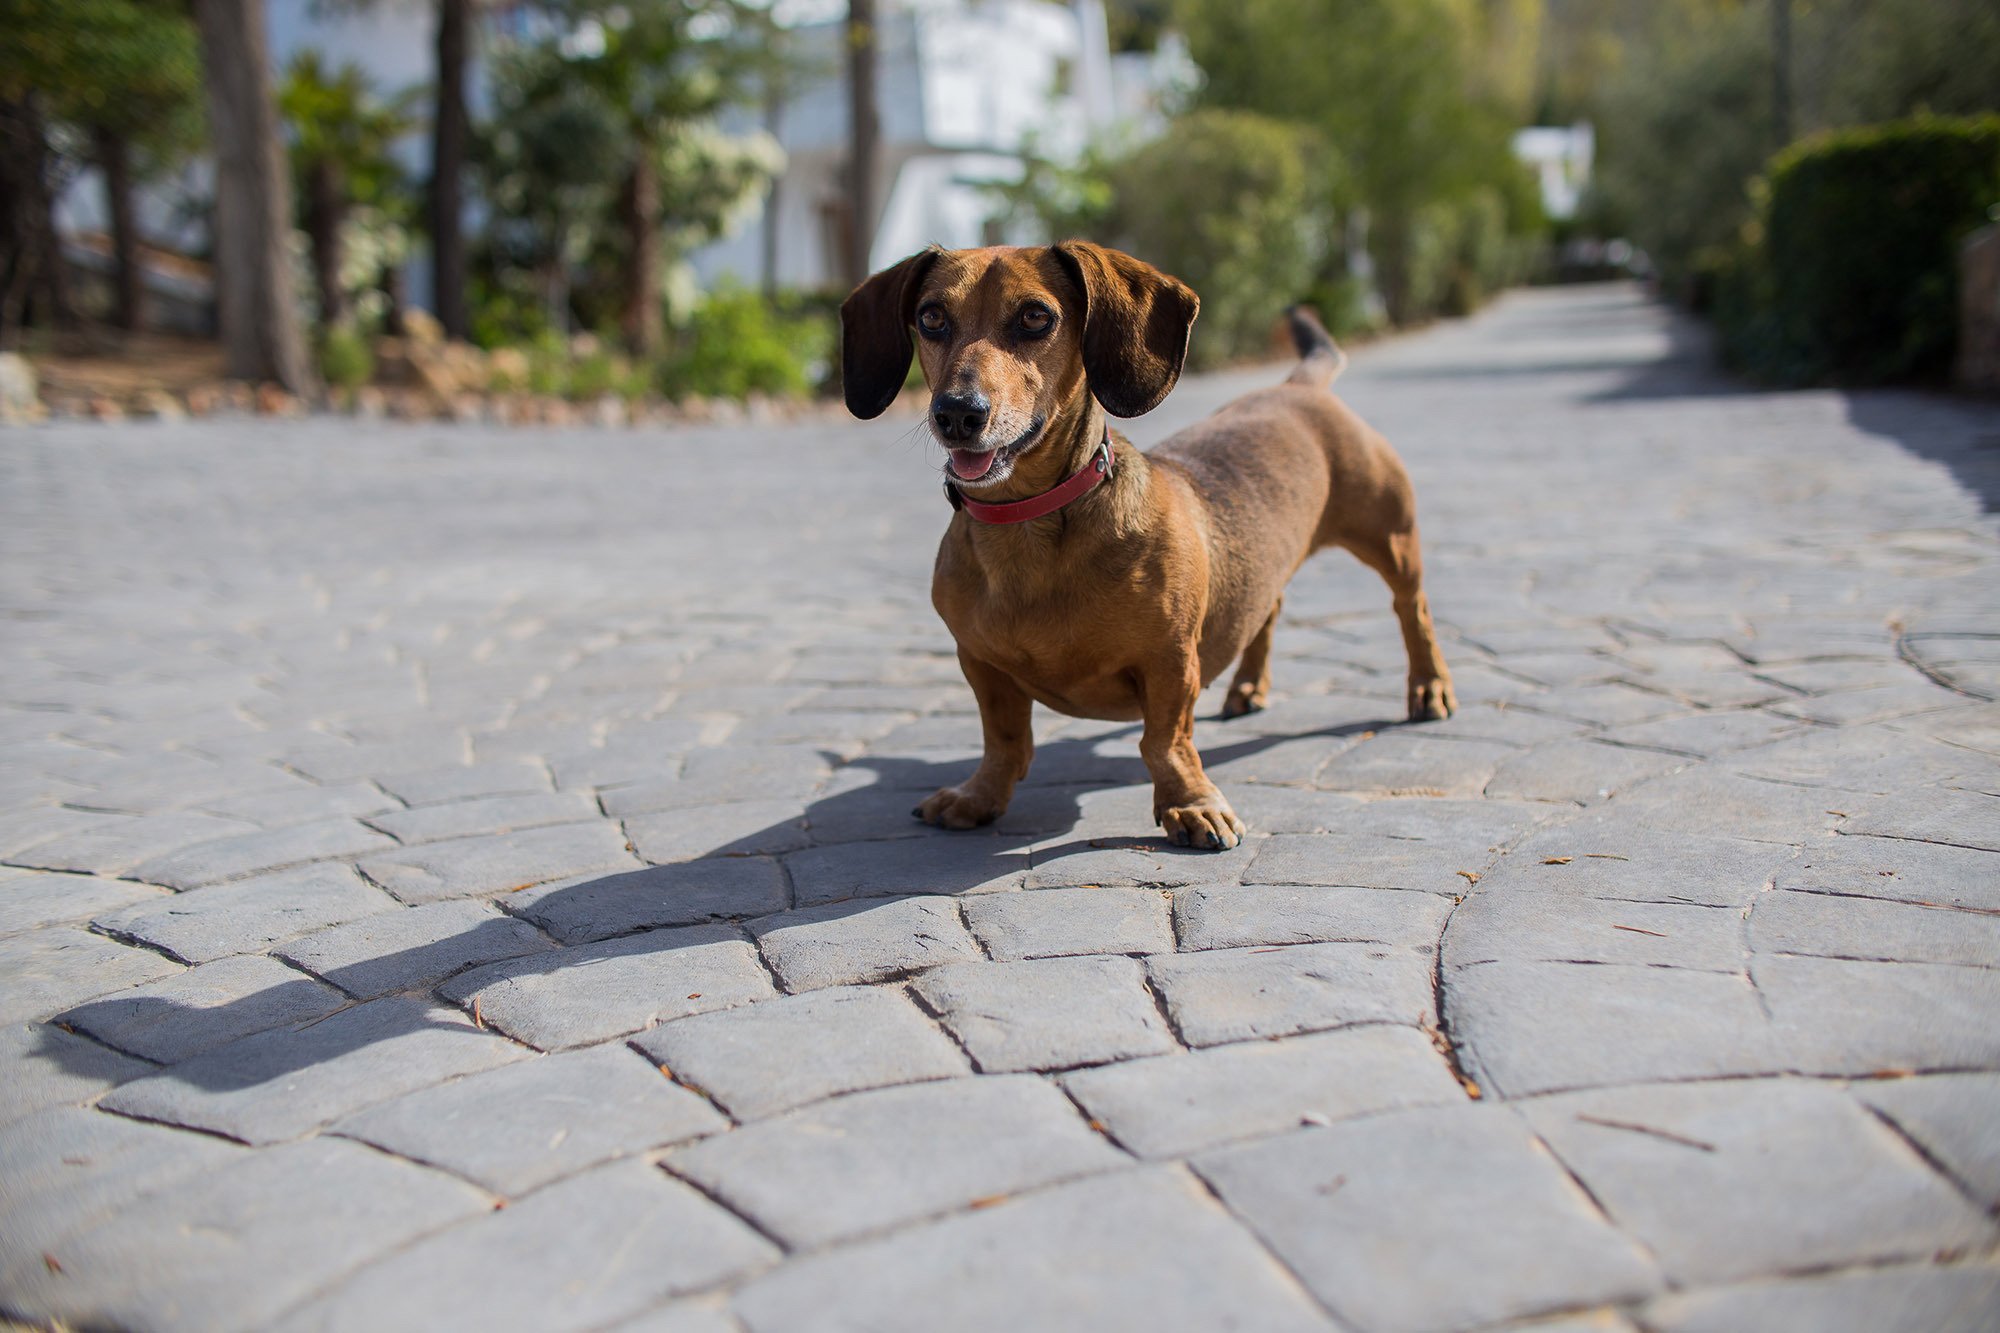 Utazás kutyával Ausztriába: fontos az érvényes oltás és chip megléte is!